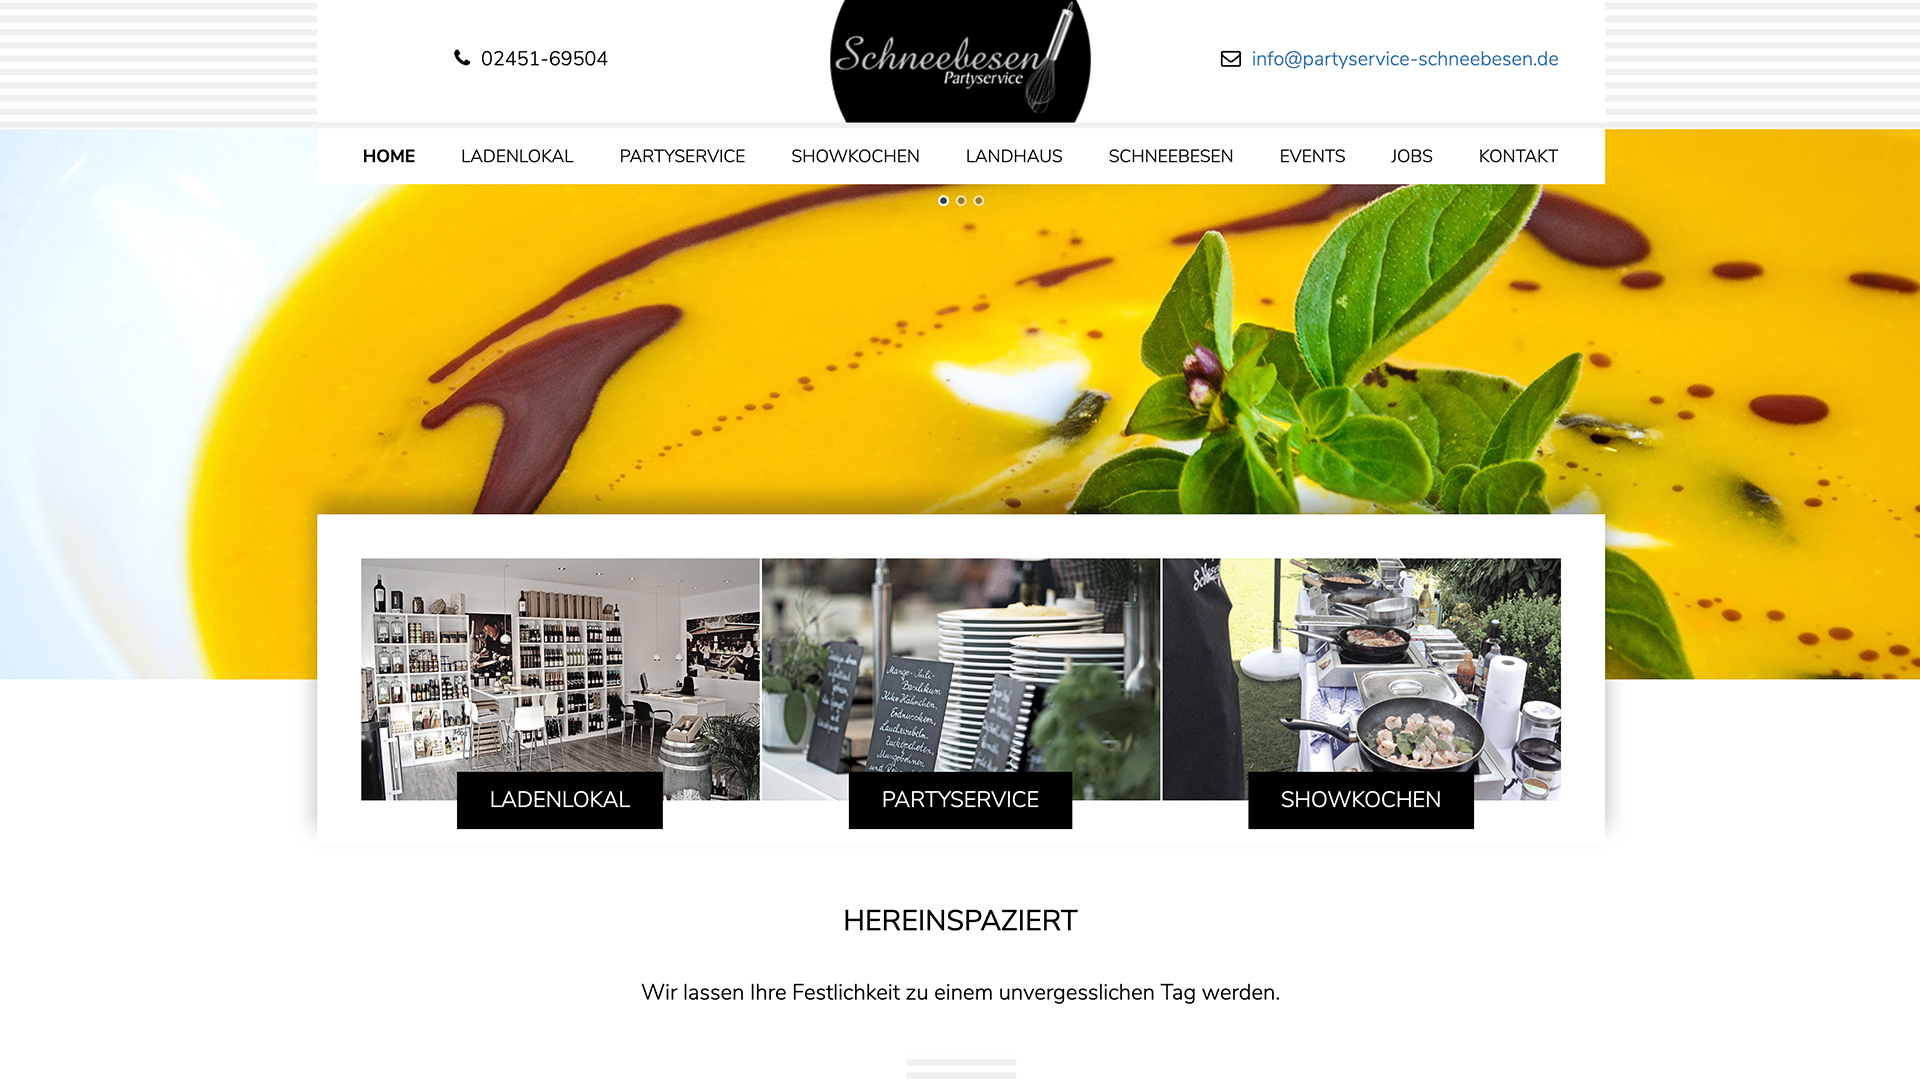 Scribble Werbeagentur in Geilenkirchen, Kreis Heinsberg, zeigt eine Webseite die responsive designt ist.